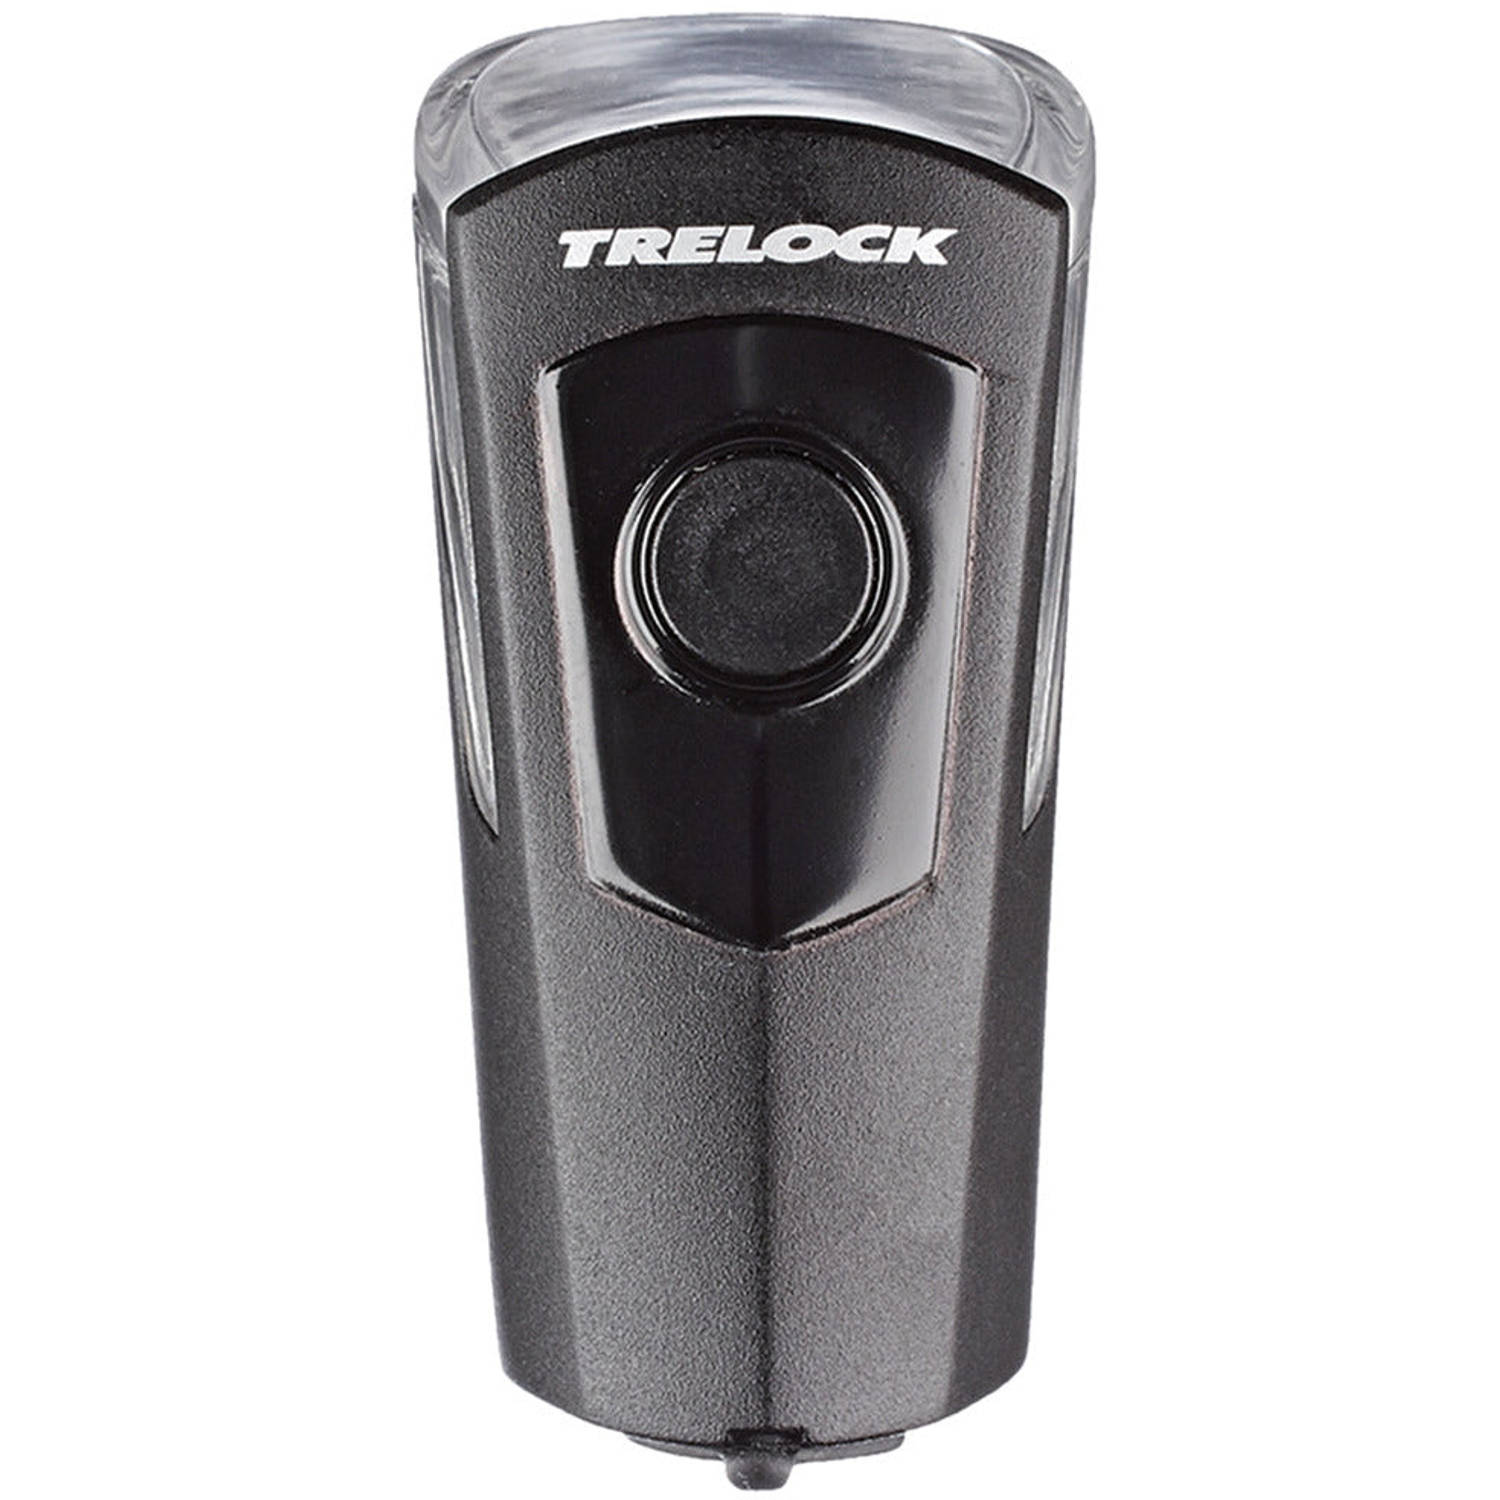 Koplamp Trelock LS 360 I-Go Eco 25 batterij - USB oplaadbaar